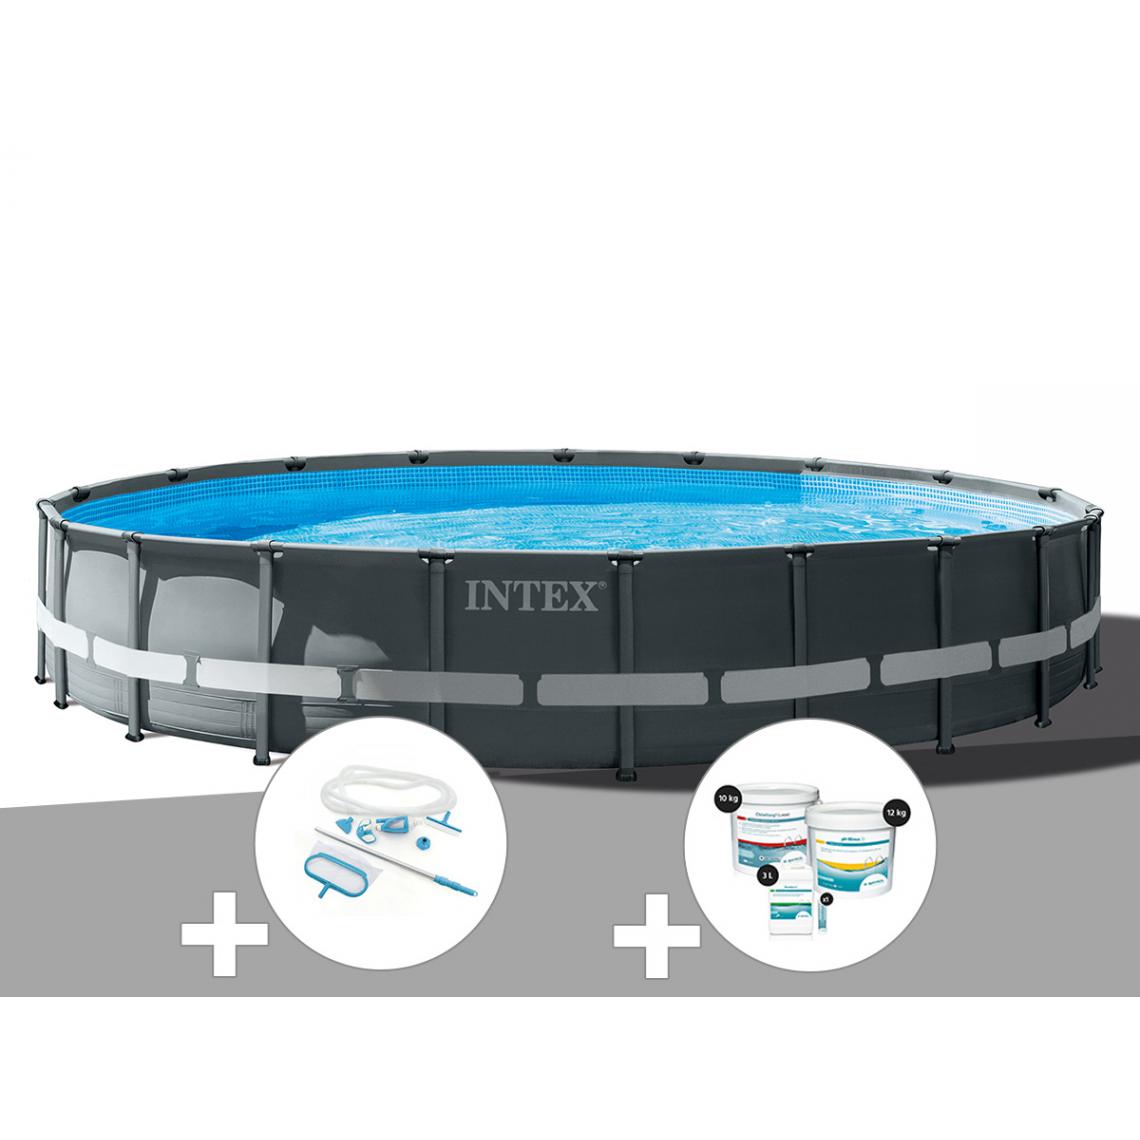 Intex - Kit piscine tubulaire Intex Ultra XTR Frame ronde 6,10 x 1,22 m + Kit d'entretien + Kit de traitement au chlore - Piscine Tubulaire